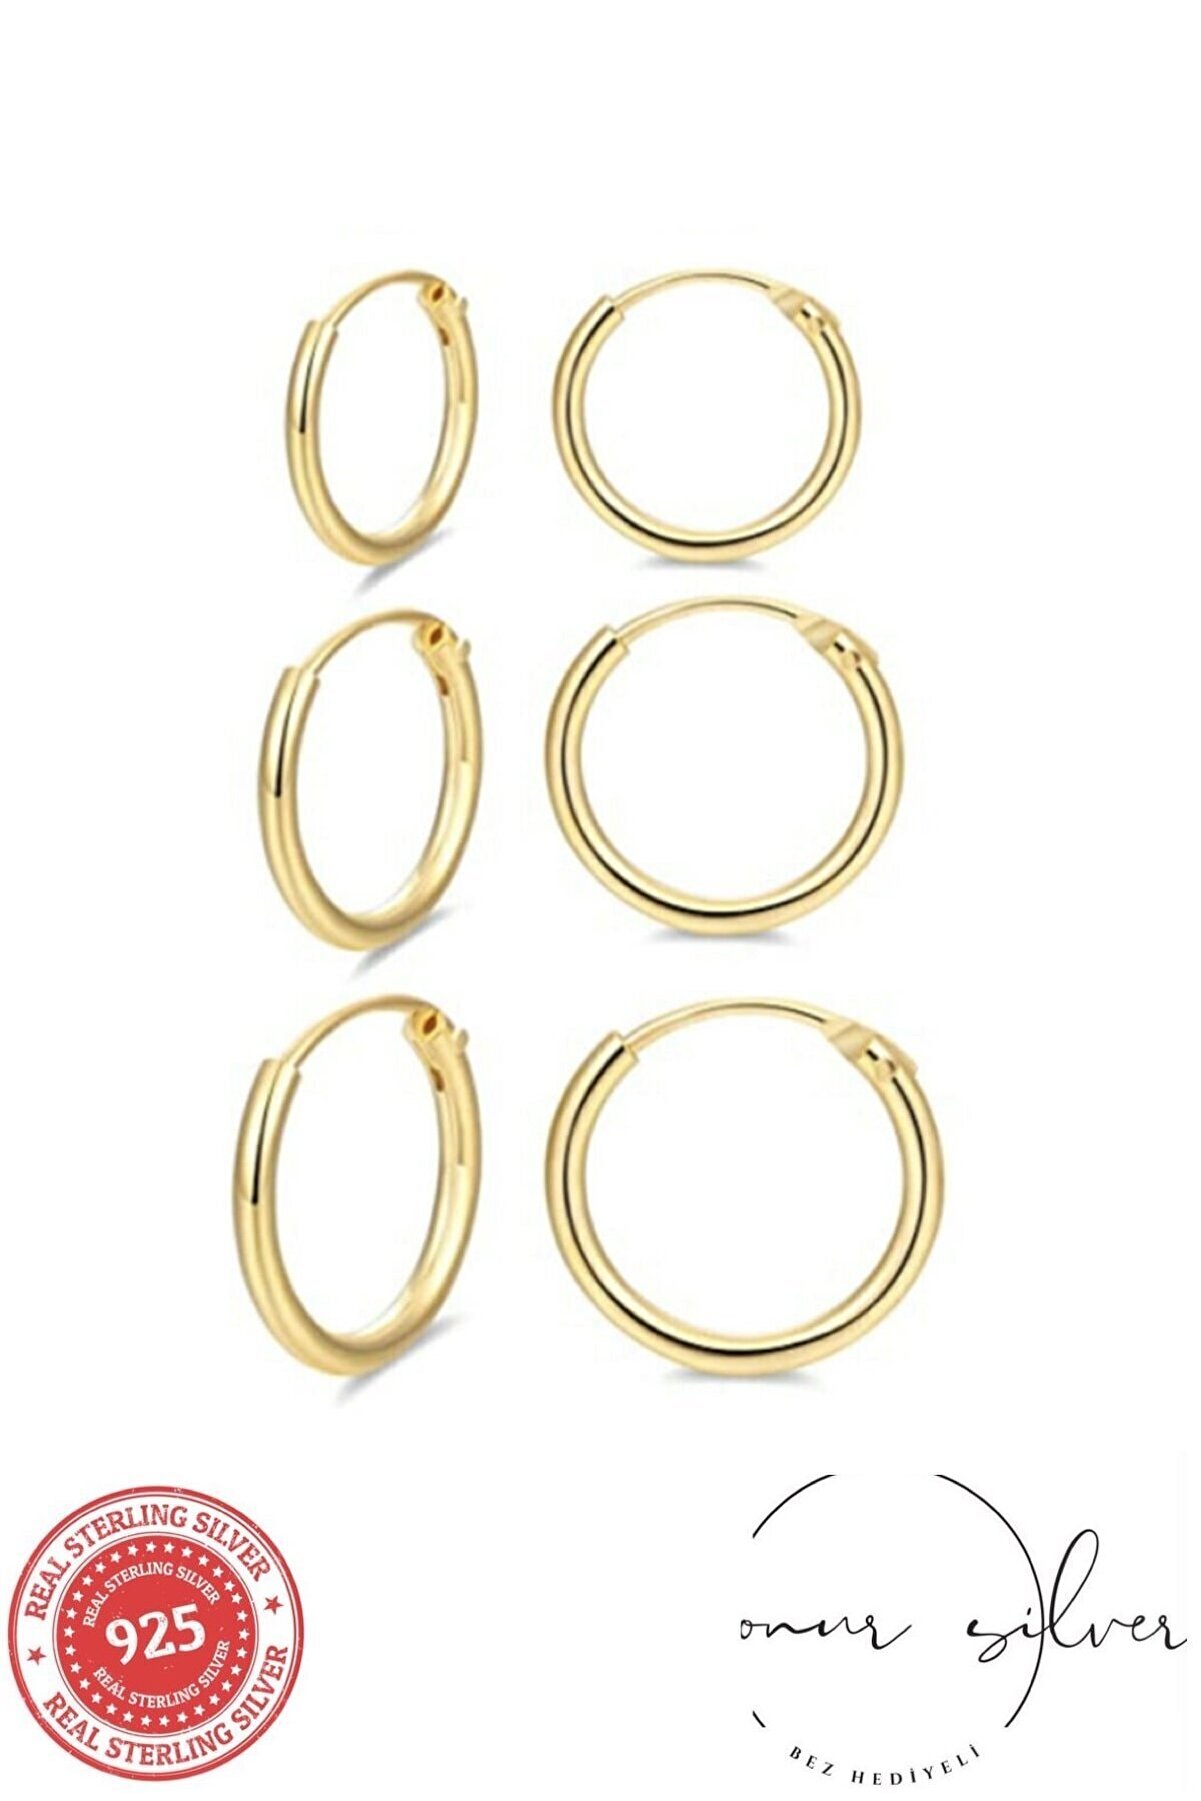 Onur Silver 925 Ayar Saf Gümüş Altın Gold Rengi Sarı Halka Küpe Seti 3'lü Hoop Earing 12-14-16 Mm